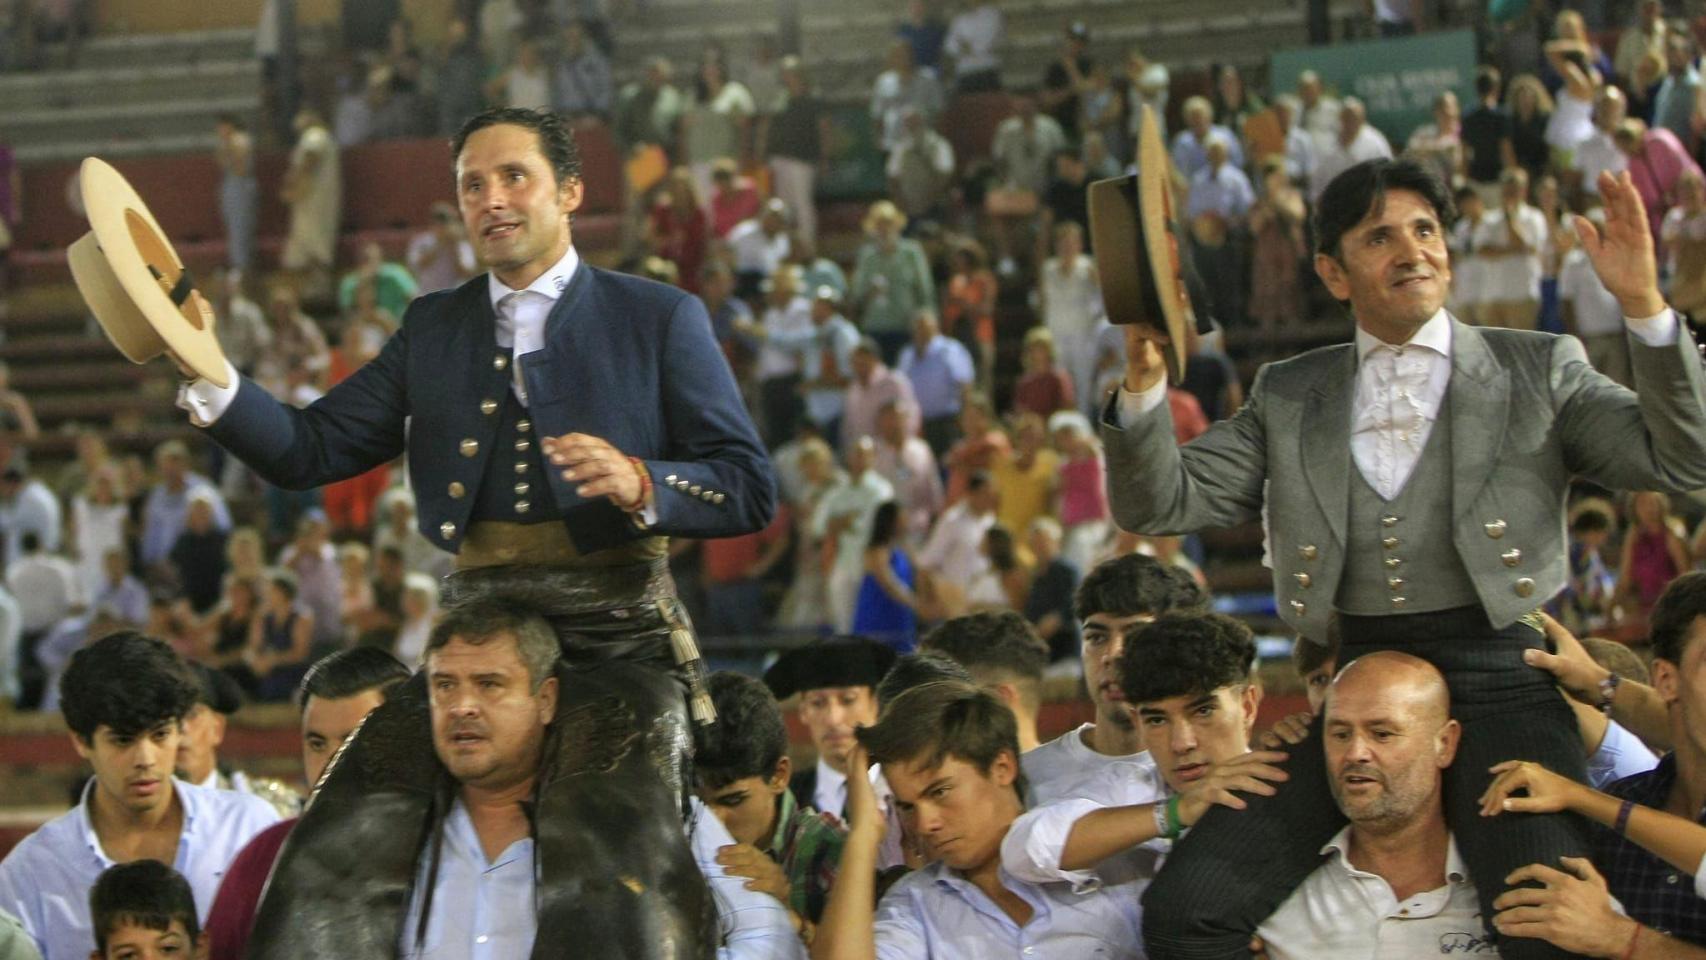 Diego Ventura y Andrés Romero en su salida en hombros de la plaza de toros de Huelva.